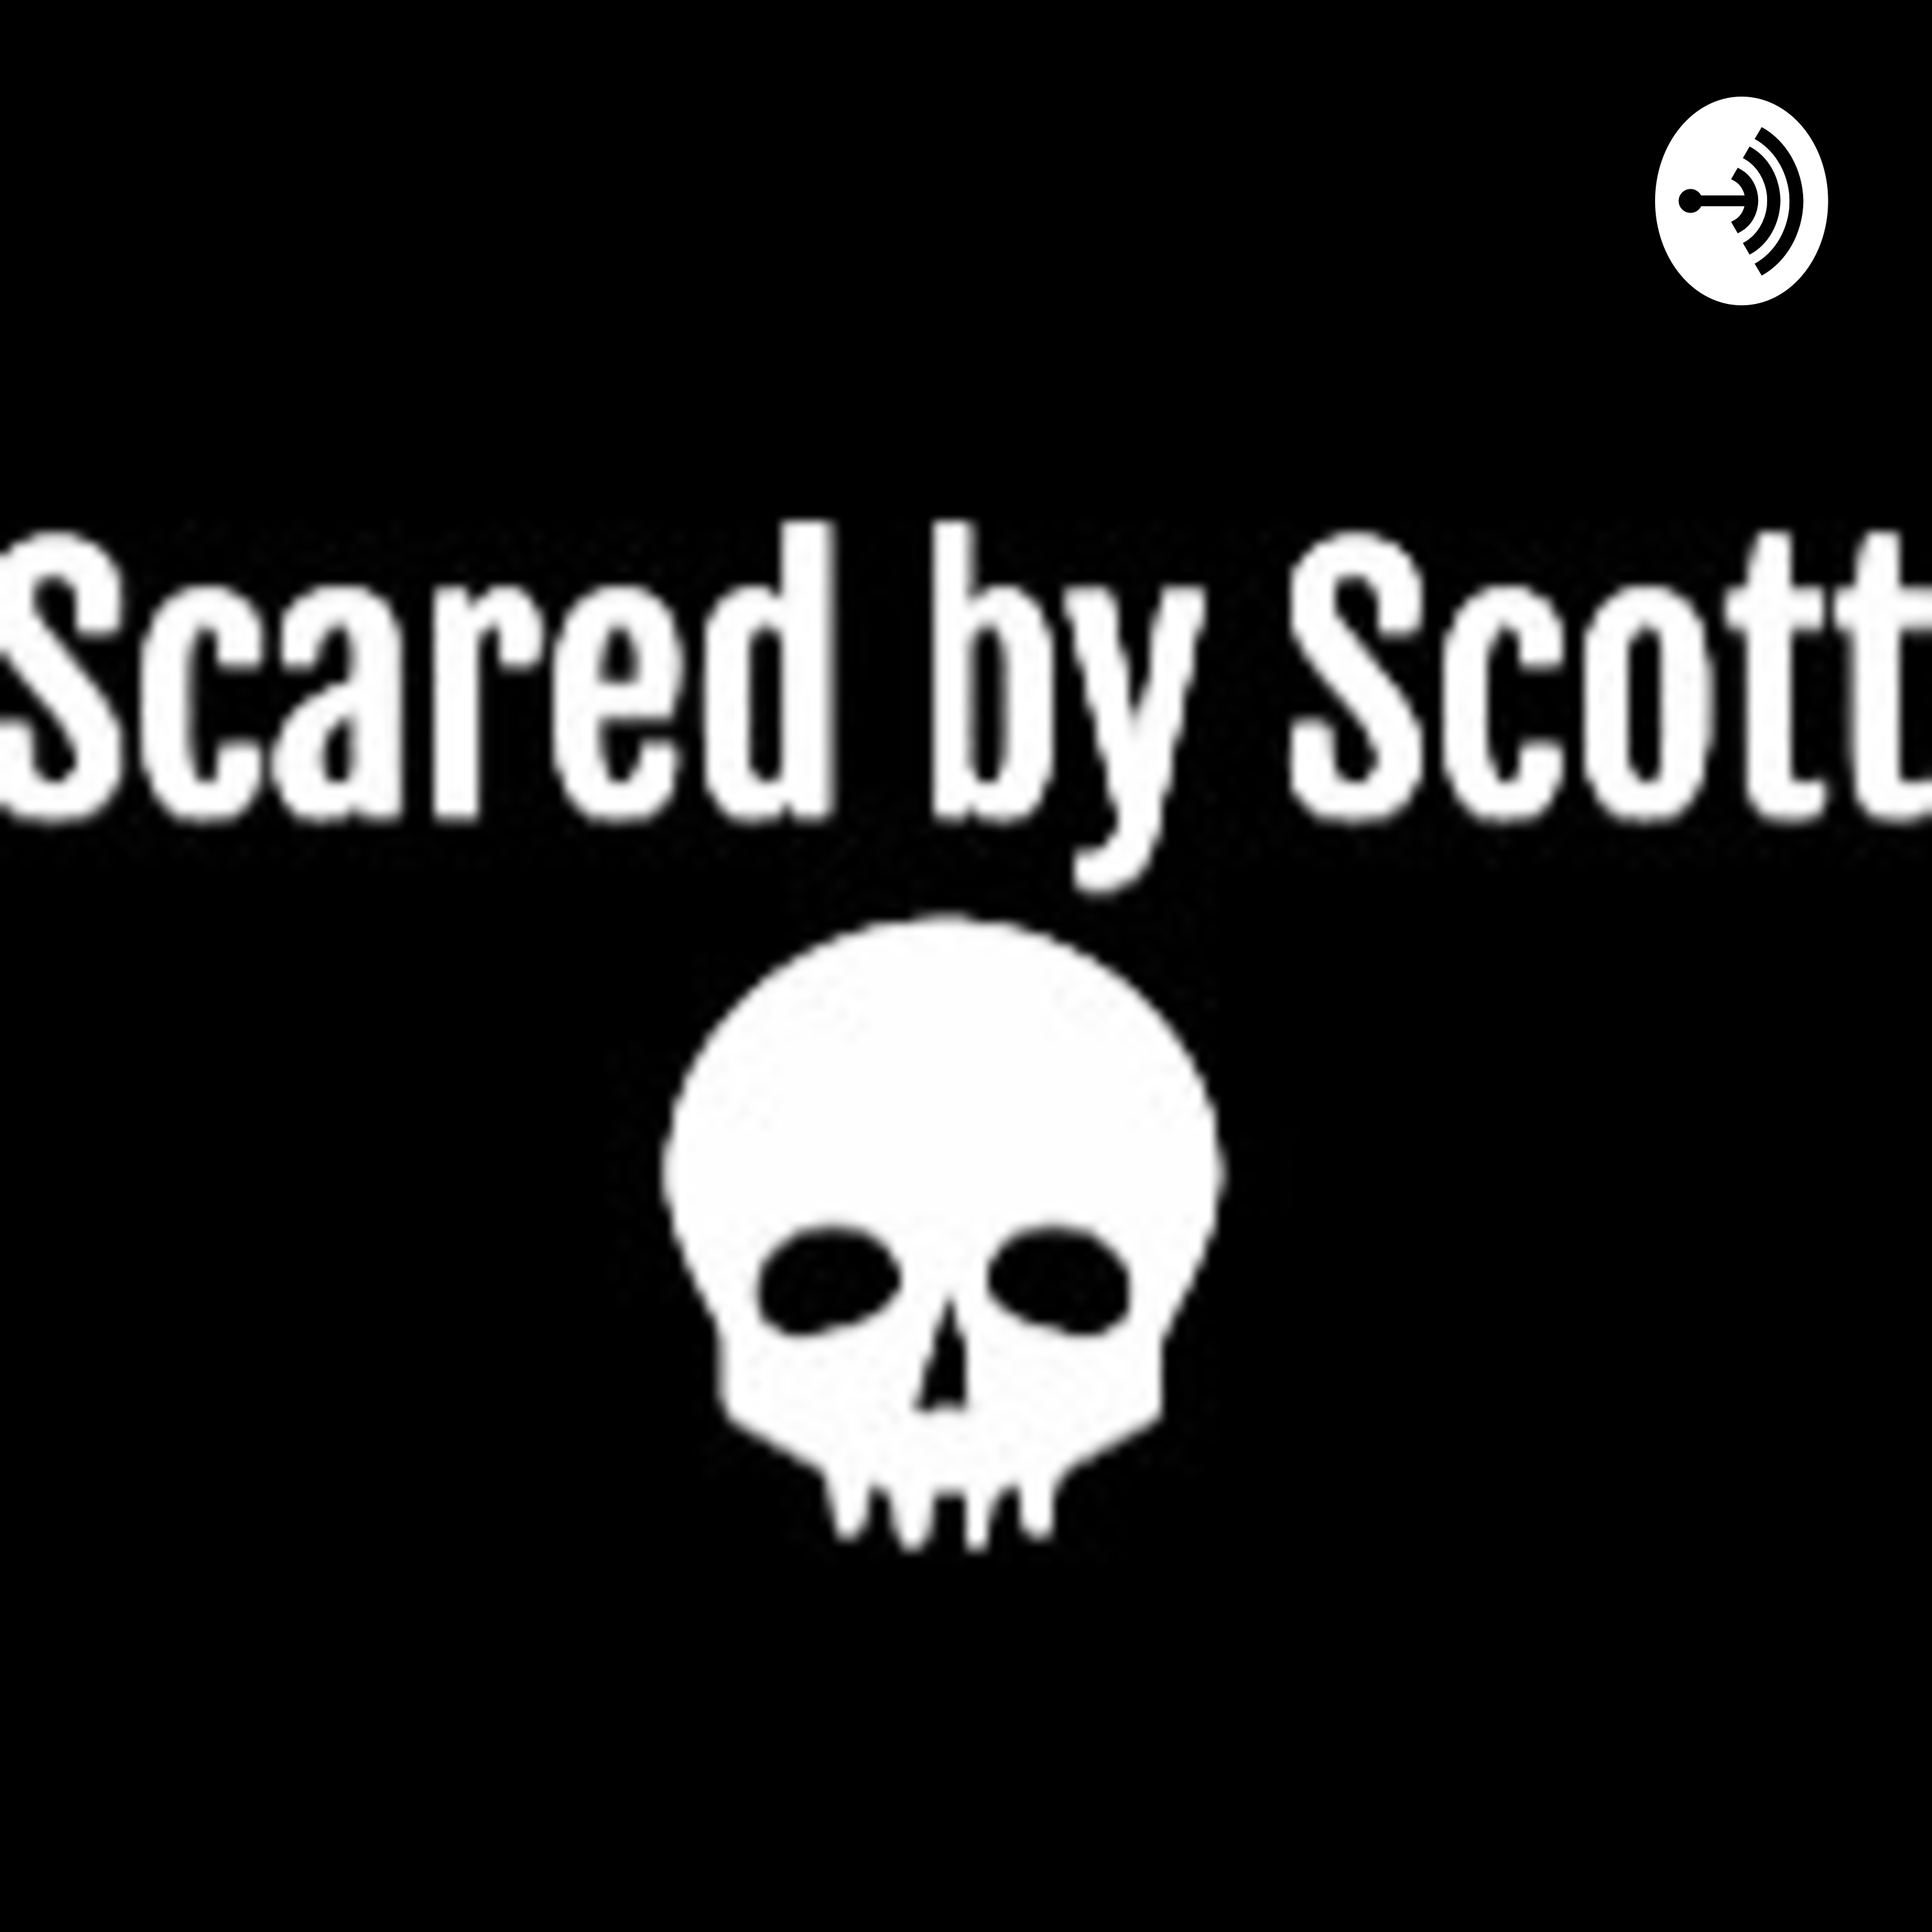 Scared by Scott